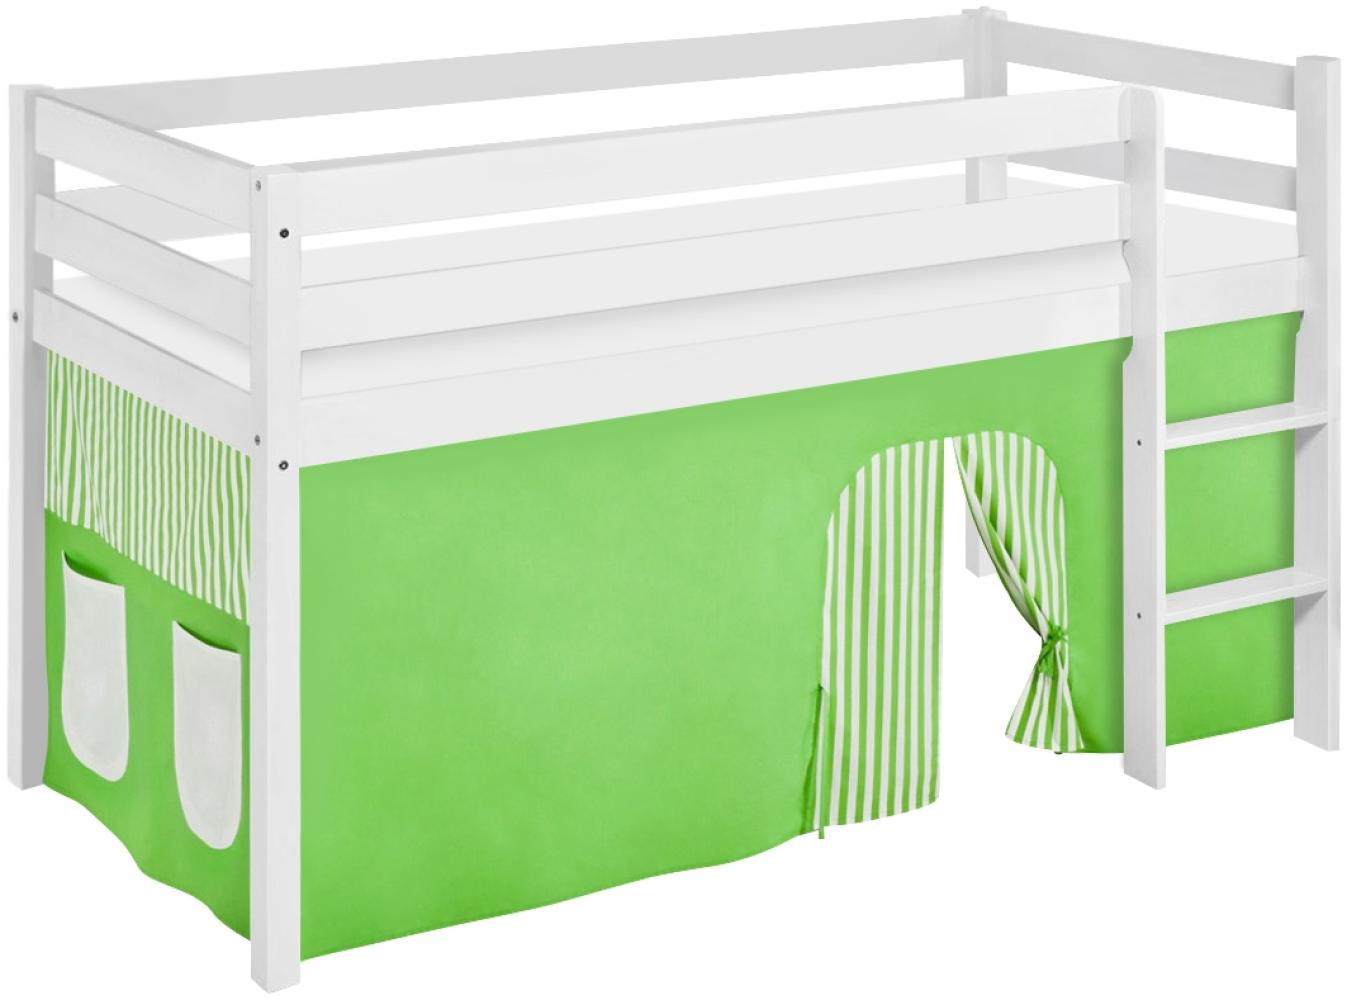 Lilokids 'Jelle' Spielbett 90 x 200 cm, Grün Beige, Kiefer massiv, mit Vorhang Bild 1